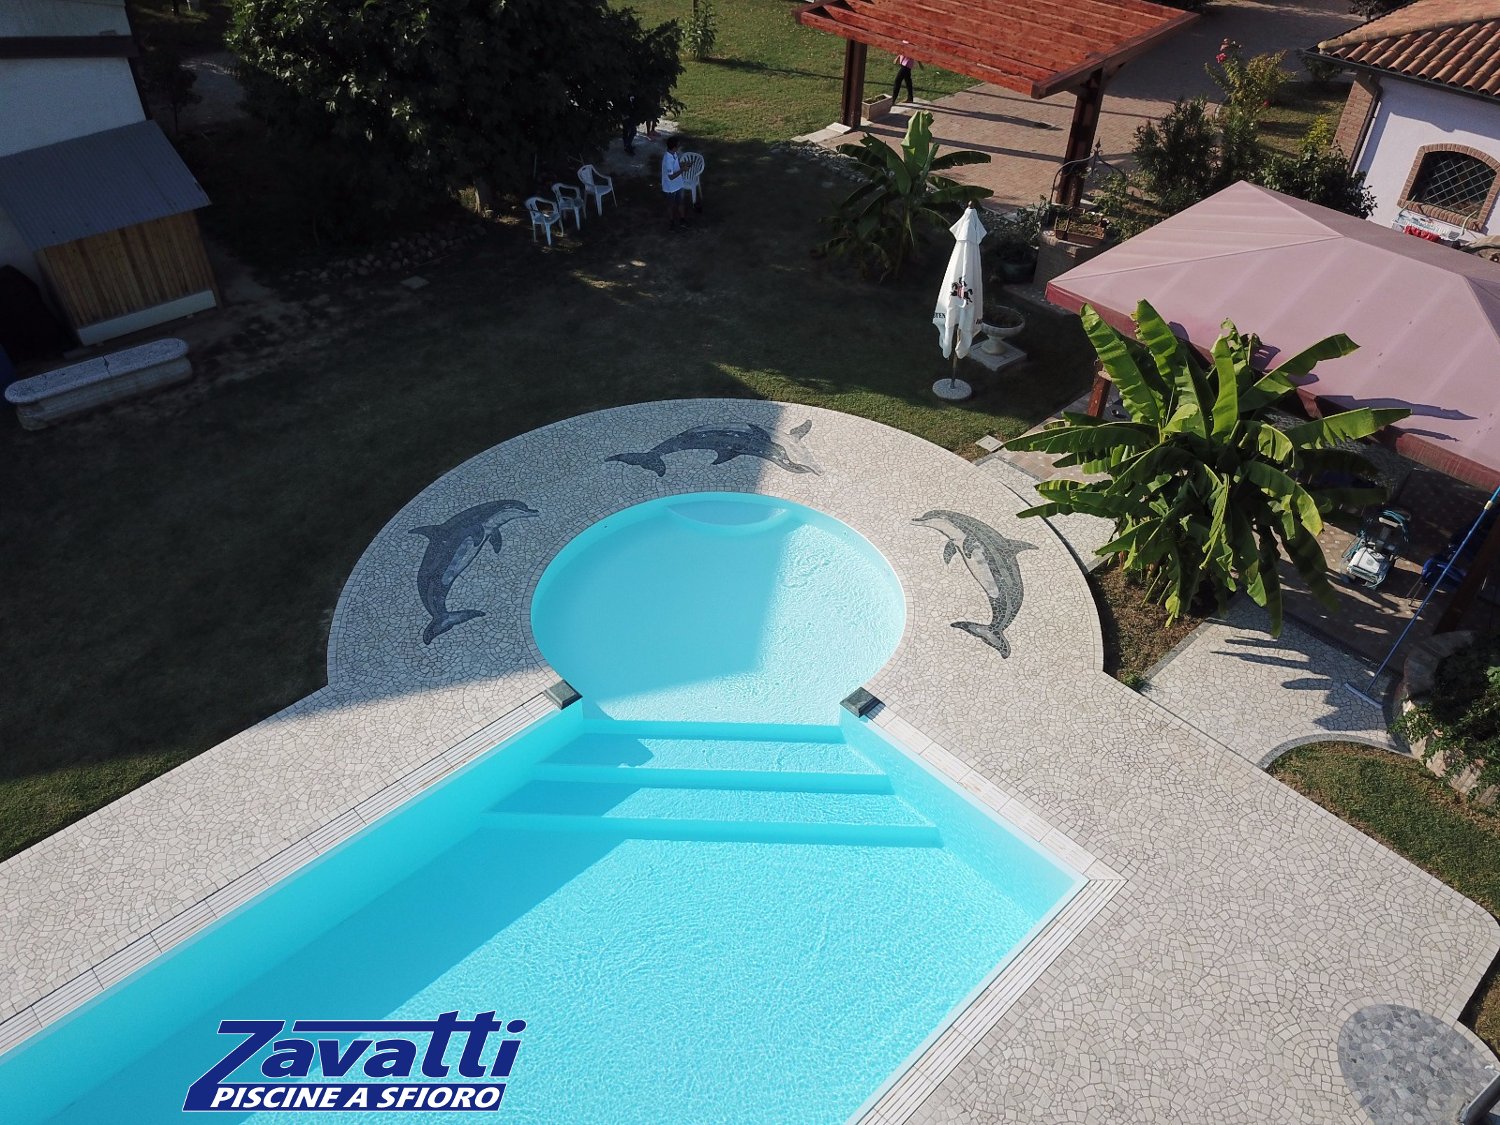 Vista aerea piscina a sfioro con bagnasciuga circolare angolare